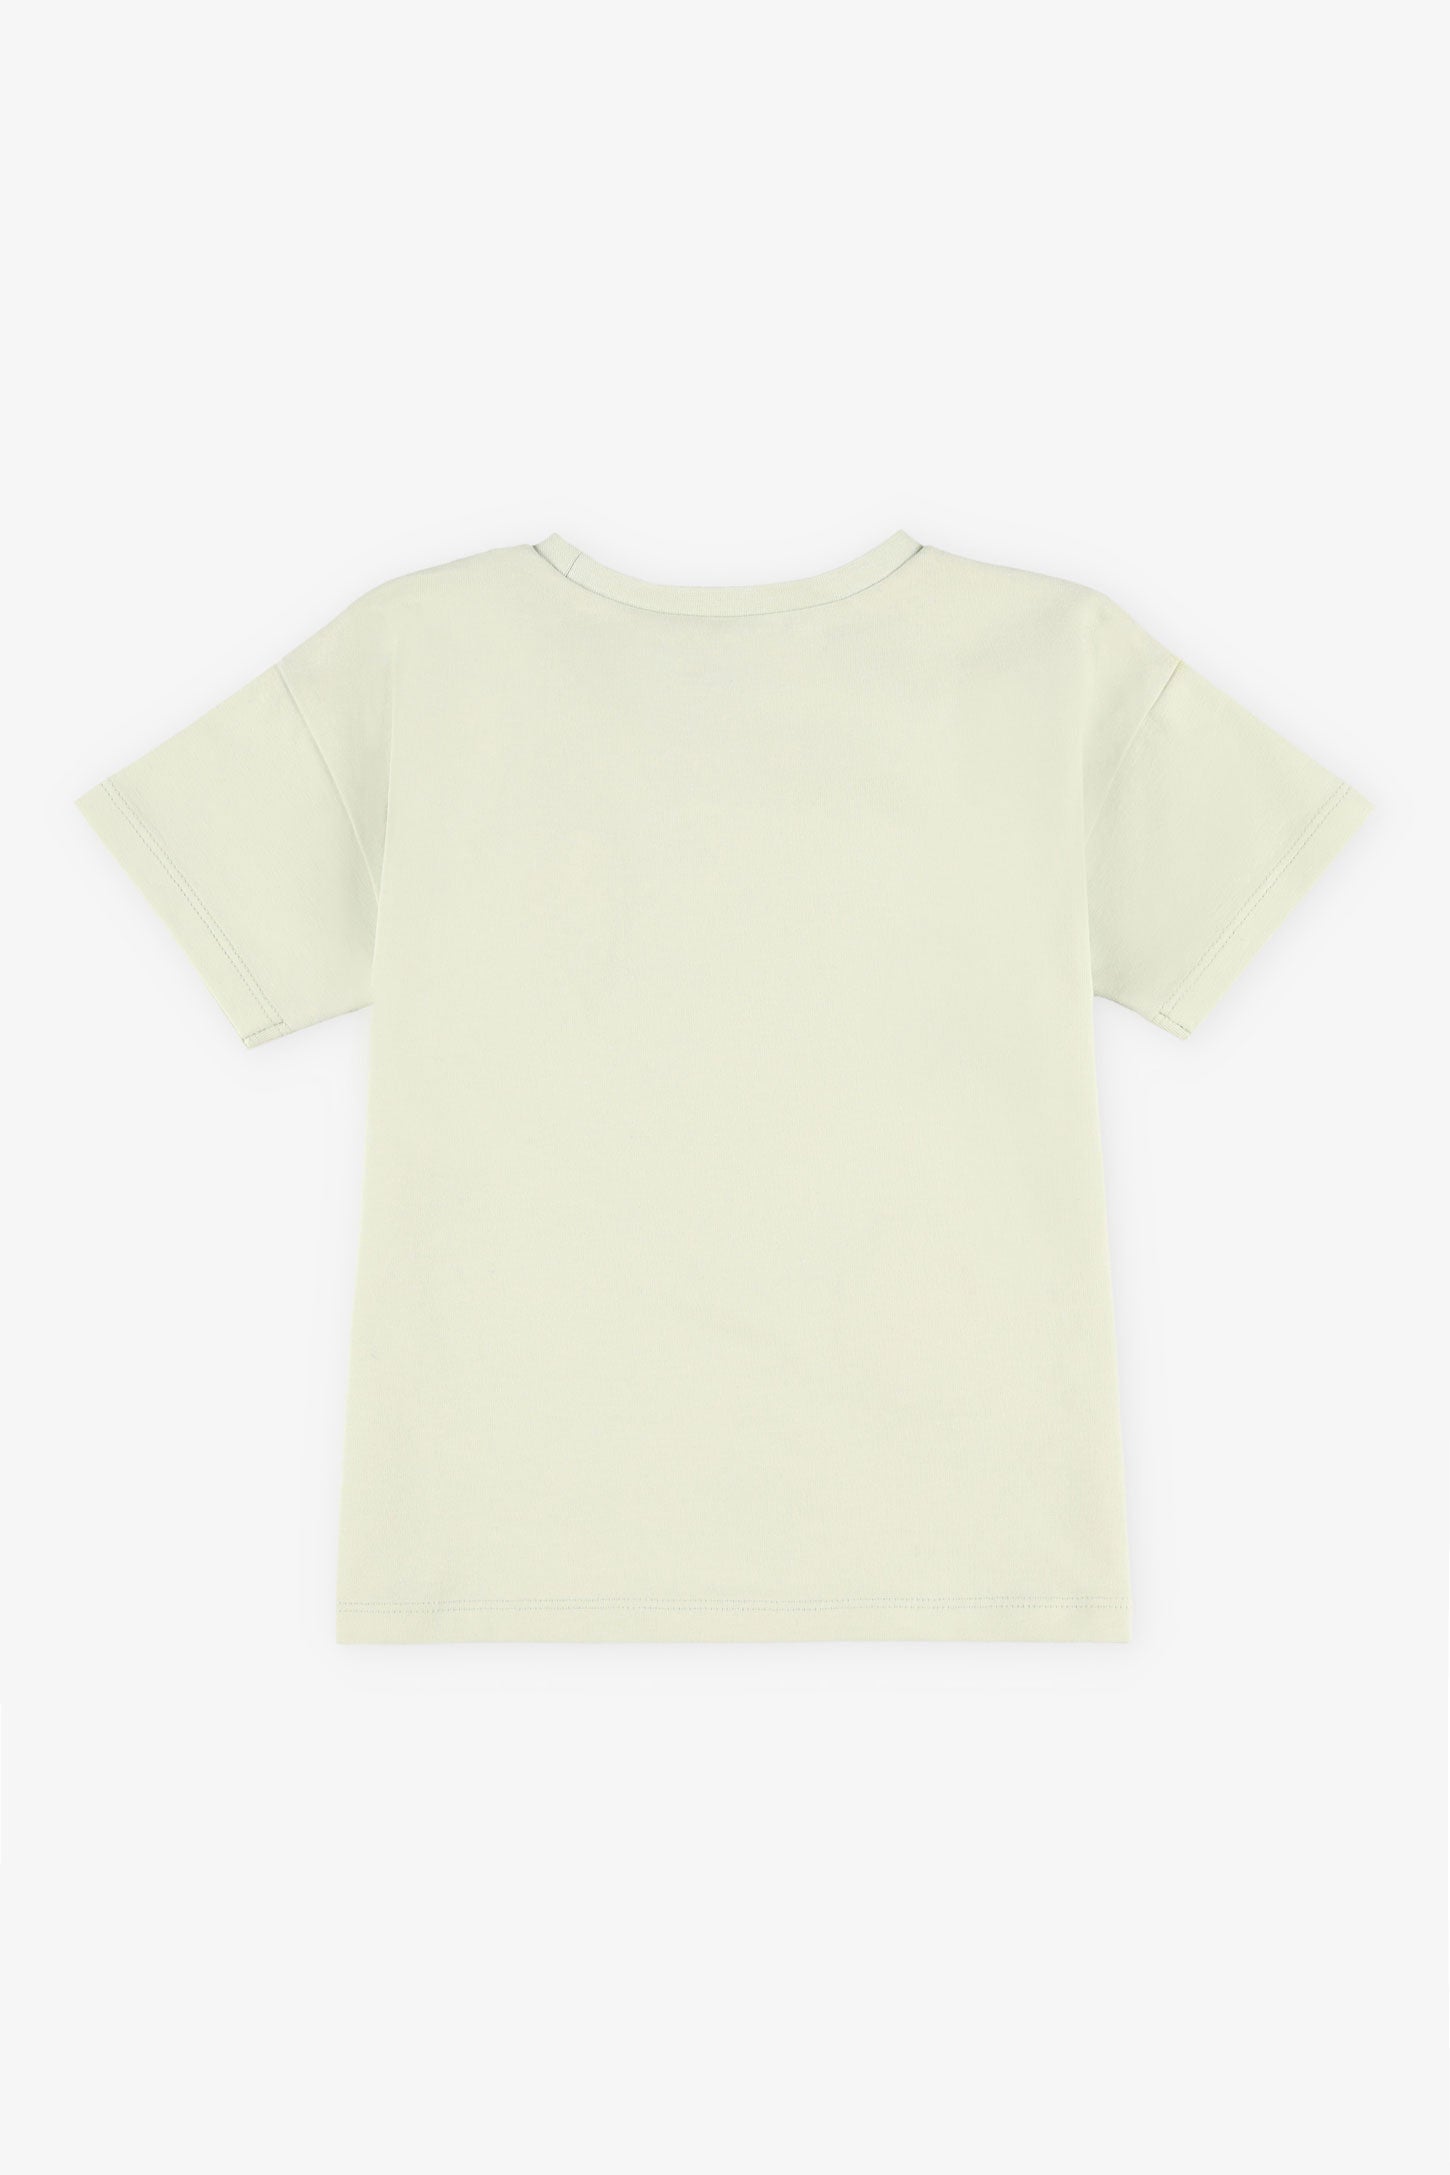 T-shirt coton avec appliqué crochet, 2T-3T - Bébé fille && VERT